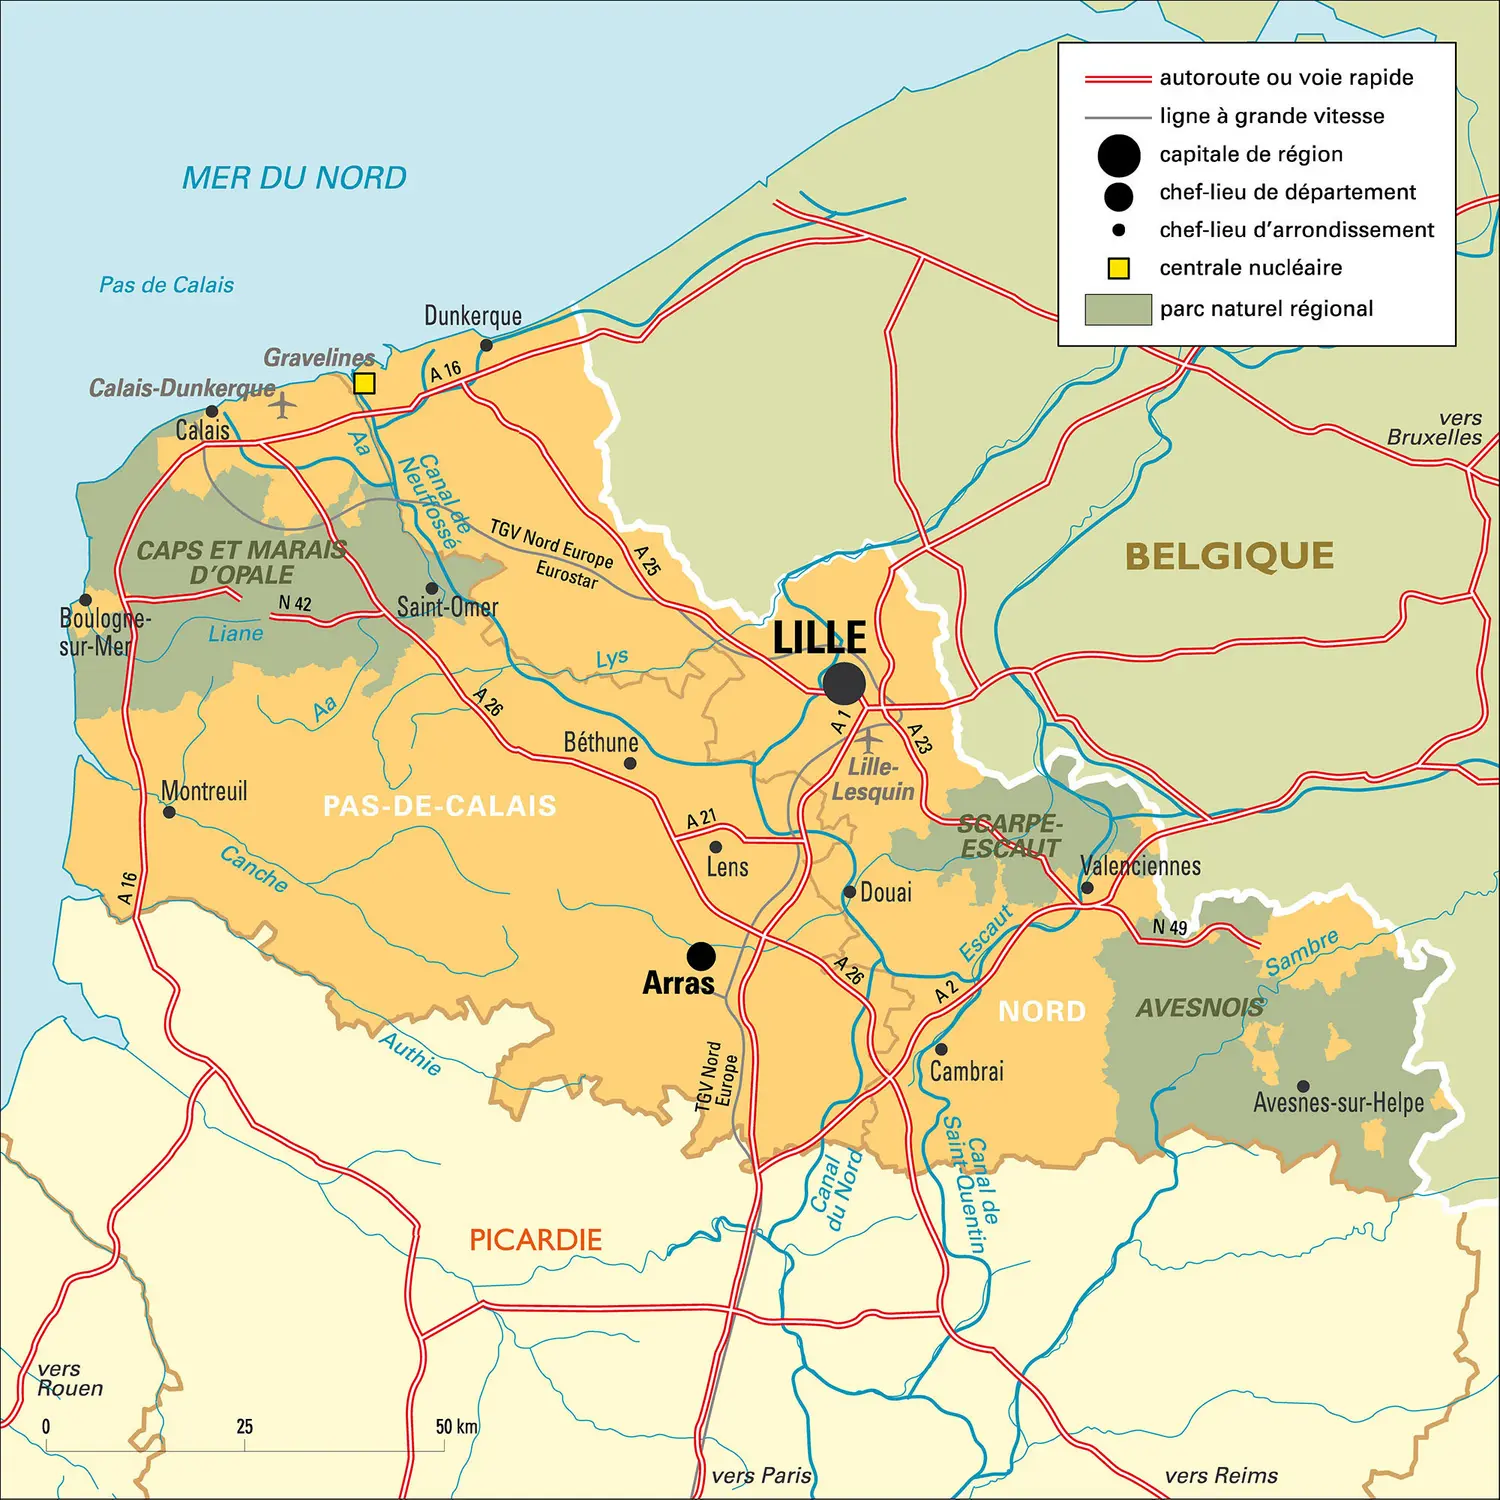 Nord-Pas-de-Calais : carte administrative&nbsp;avant réforme